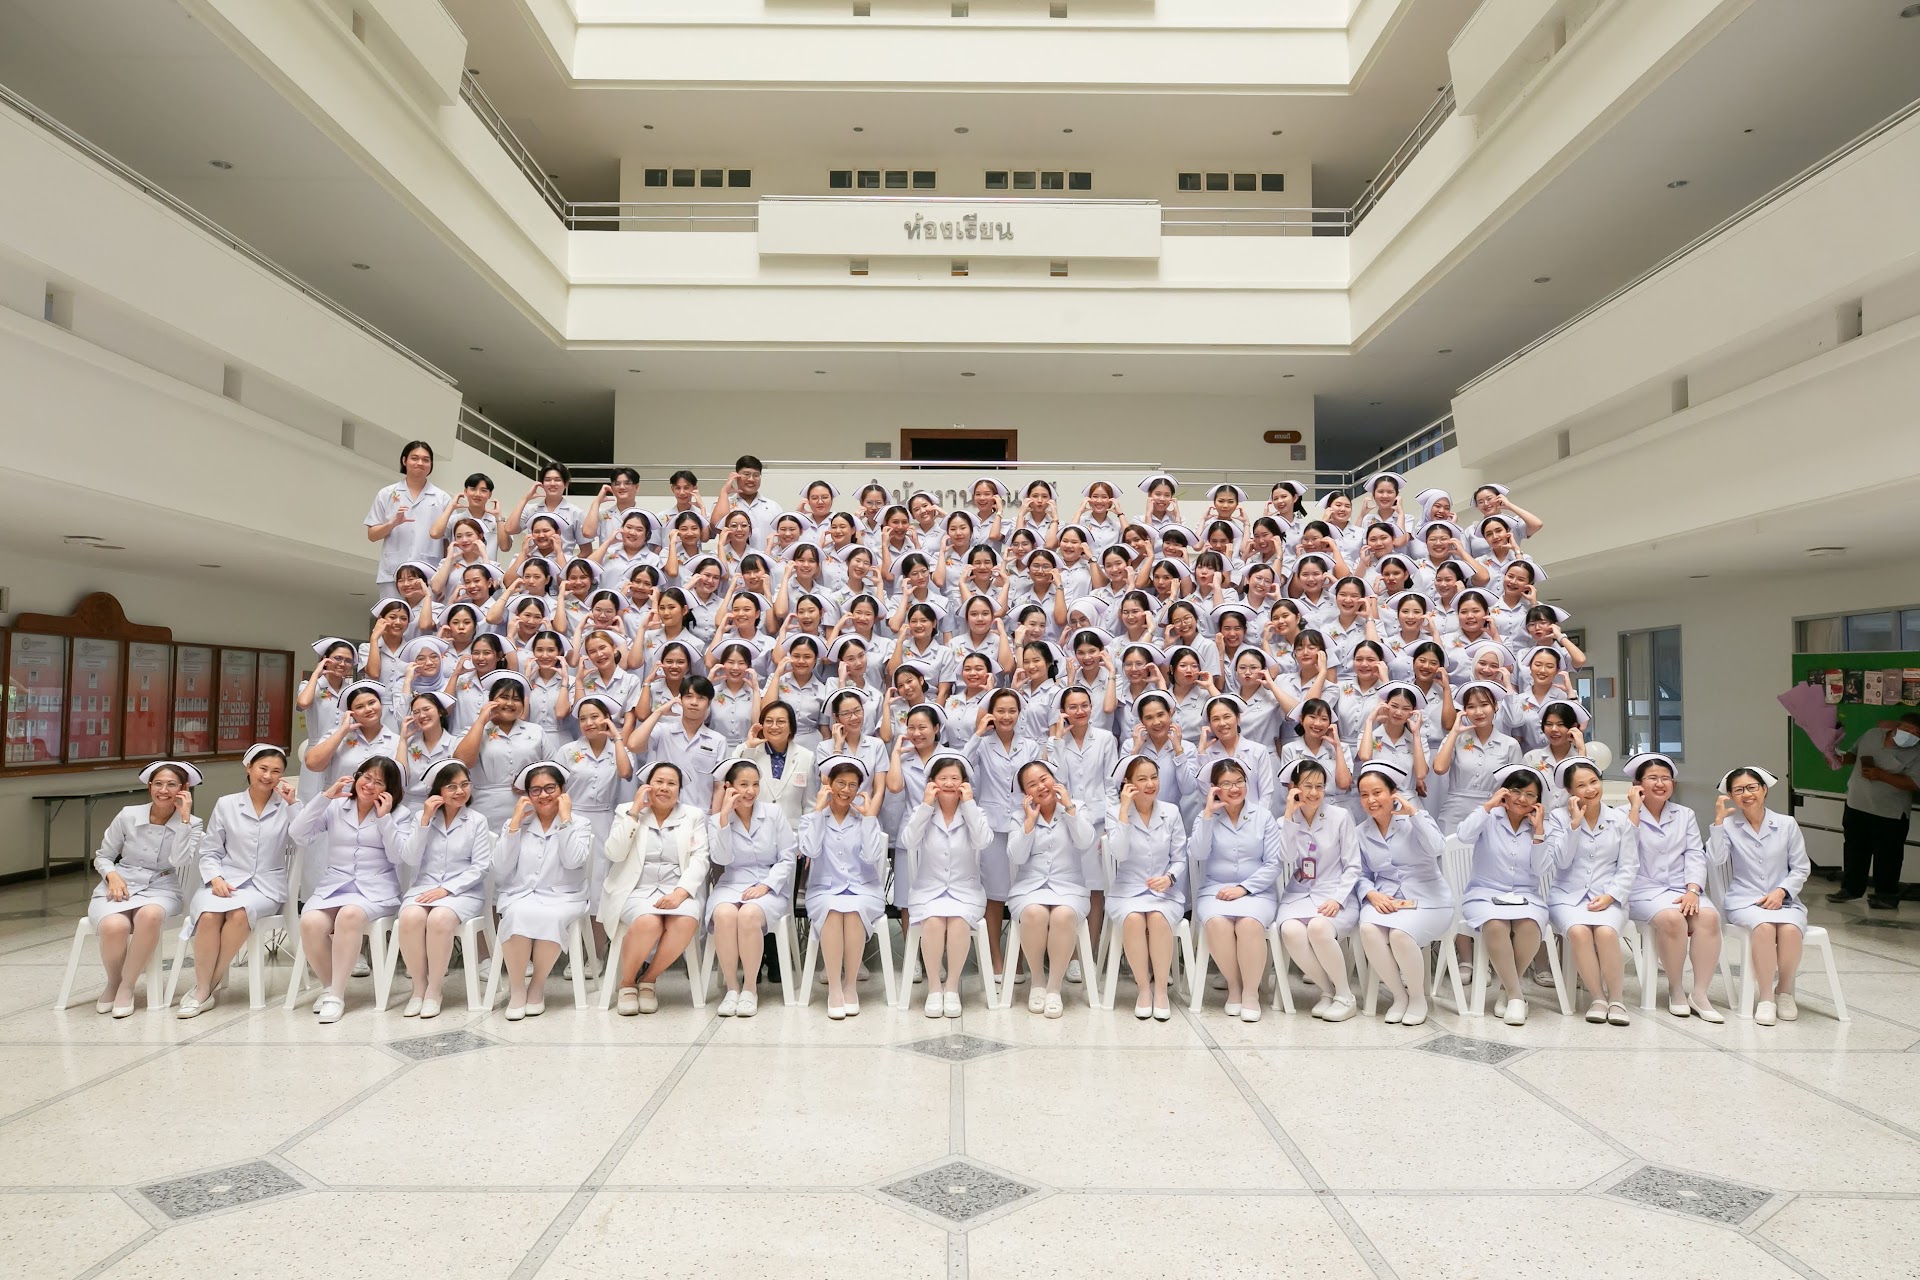 พิธีประกาศสำเร็จการศึกษา นิสิตหลักสูตรพยาบาลศาสตรบัณฑิต รุ่นที่ 22 ปีการศึกษา 2566